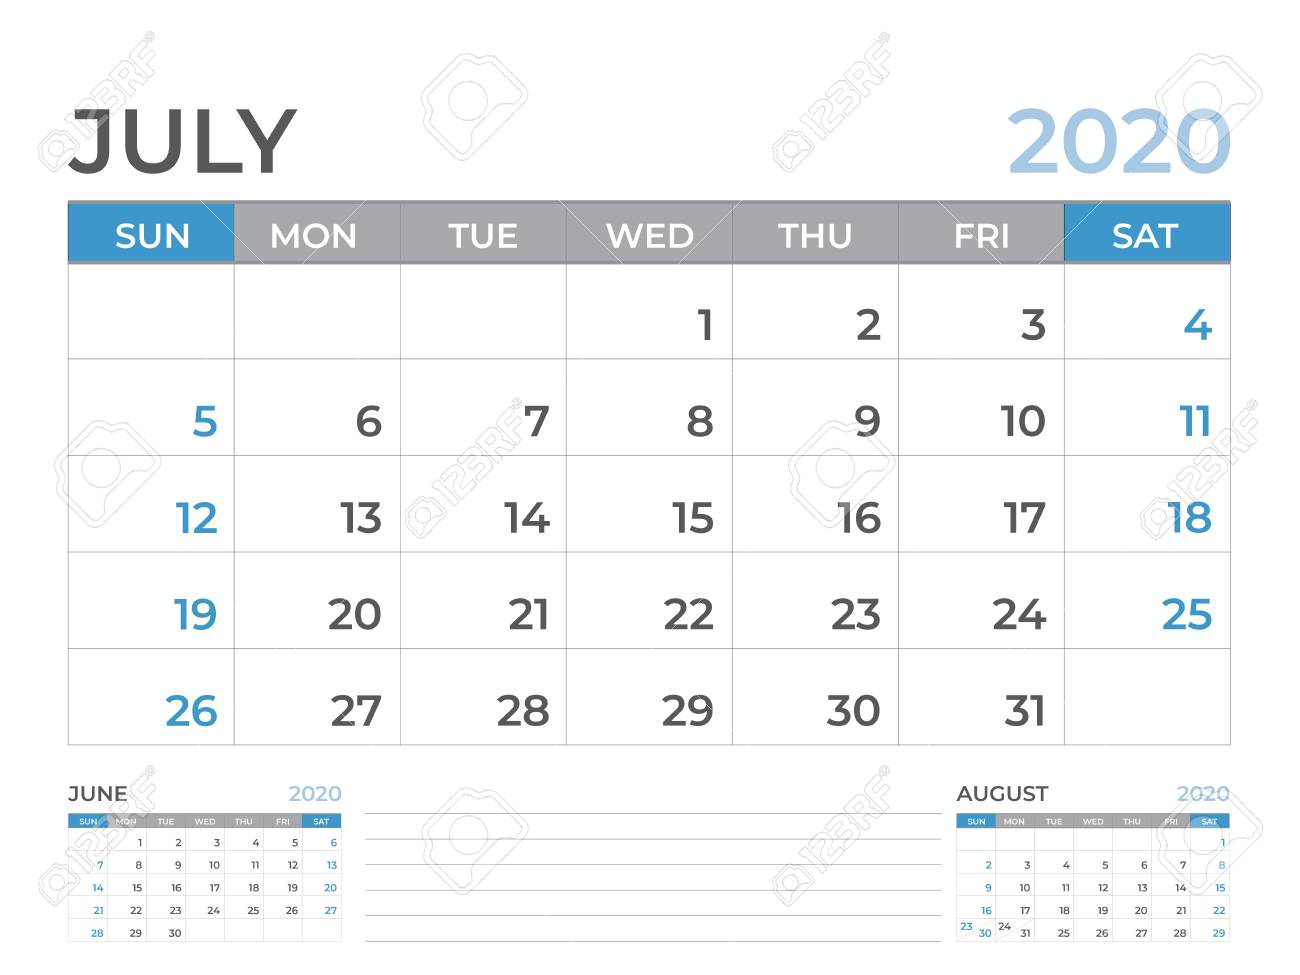 June 2020 Calendar Template, Desk Calendar Layout Size 8 X 6..